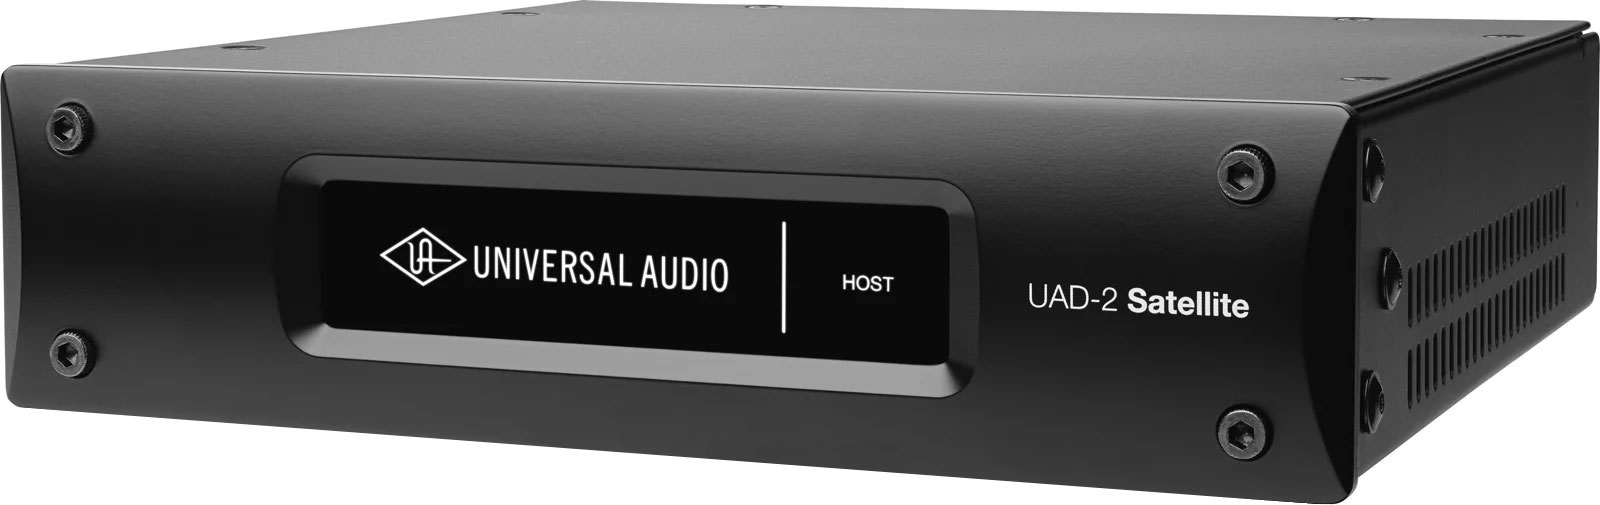 UNIVERSAL AUDIO UAD-2 QUAD SATELLITE USB